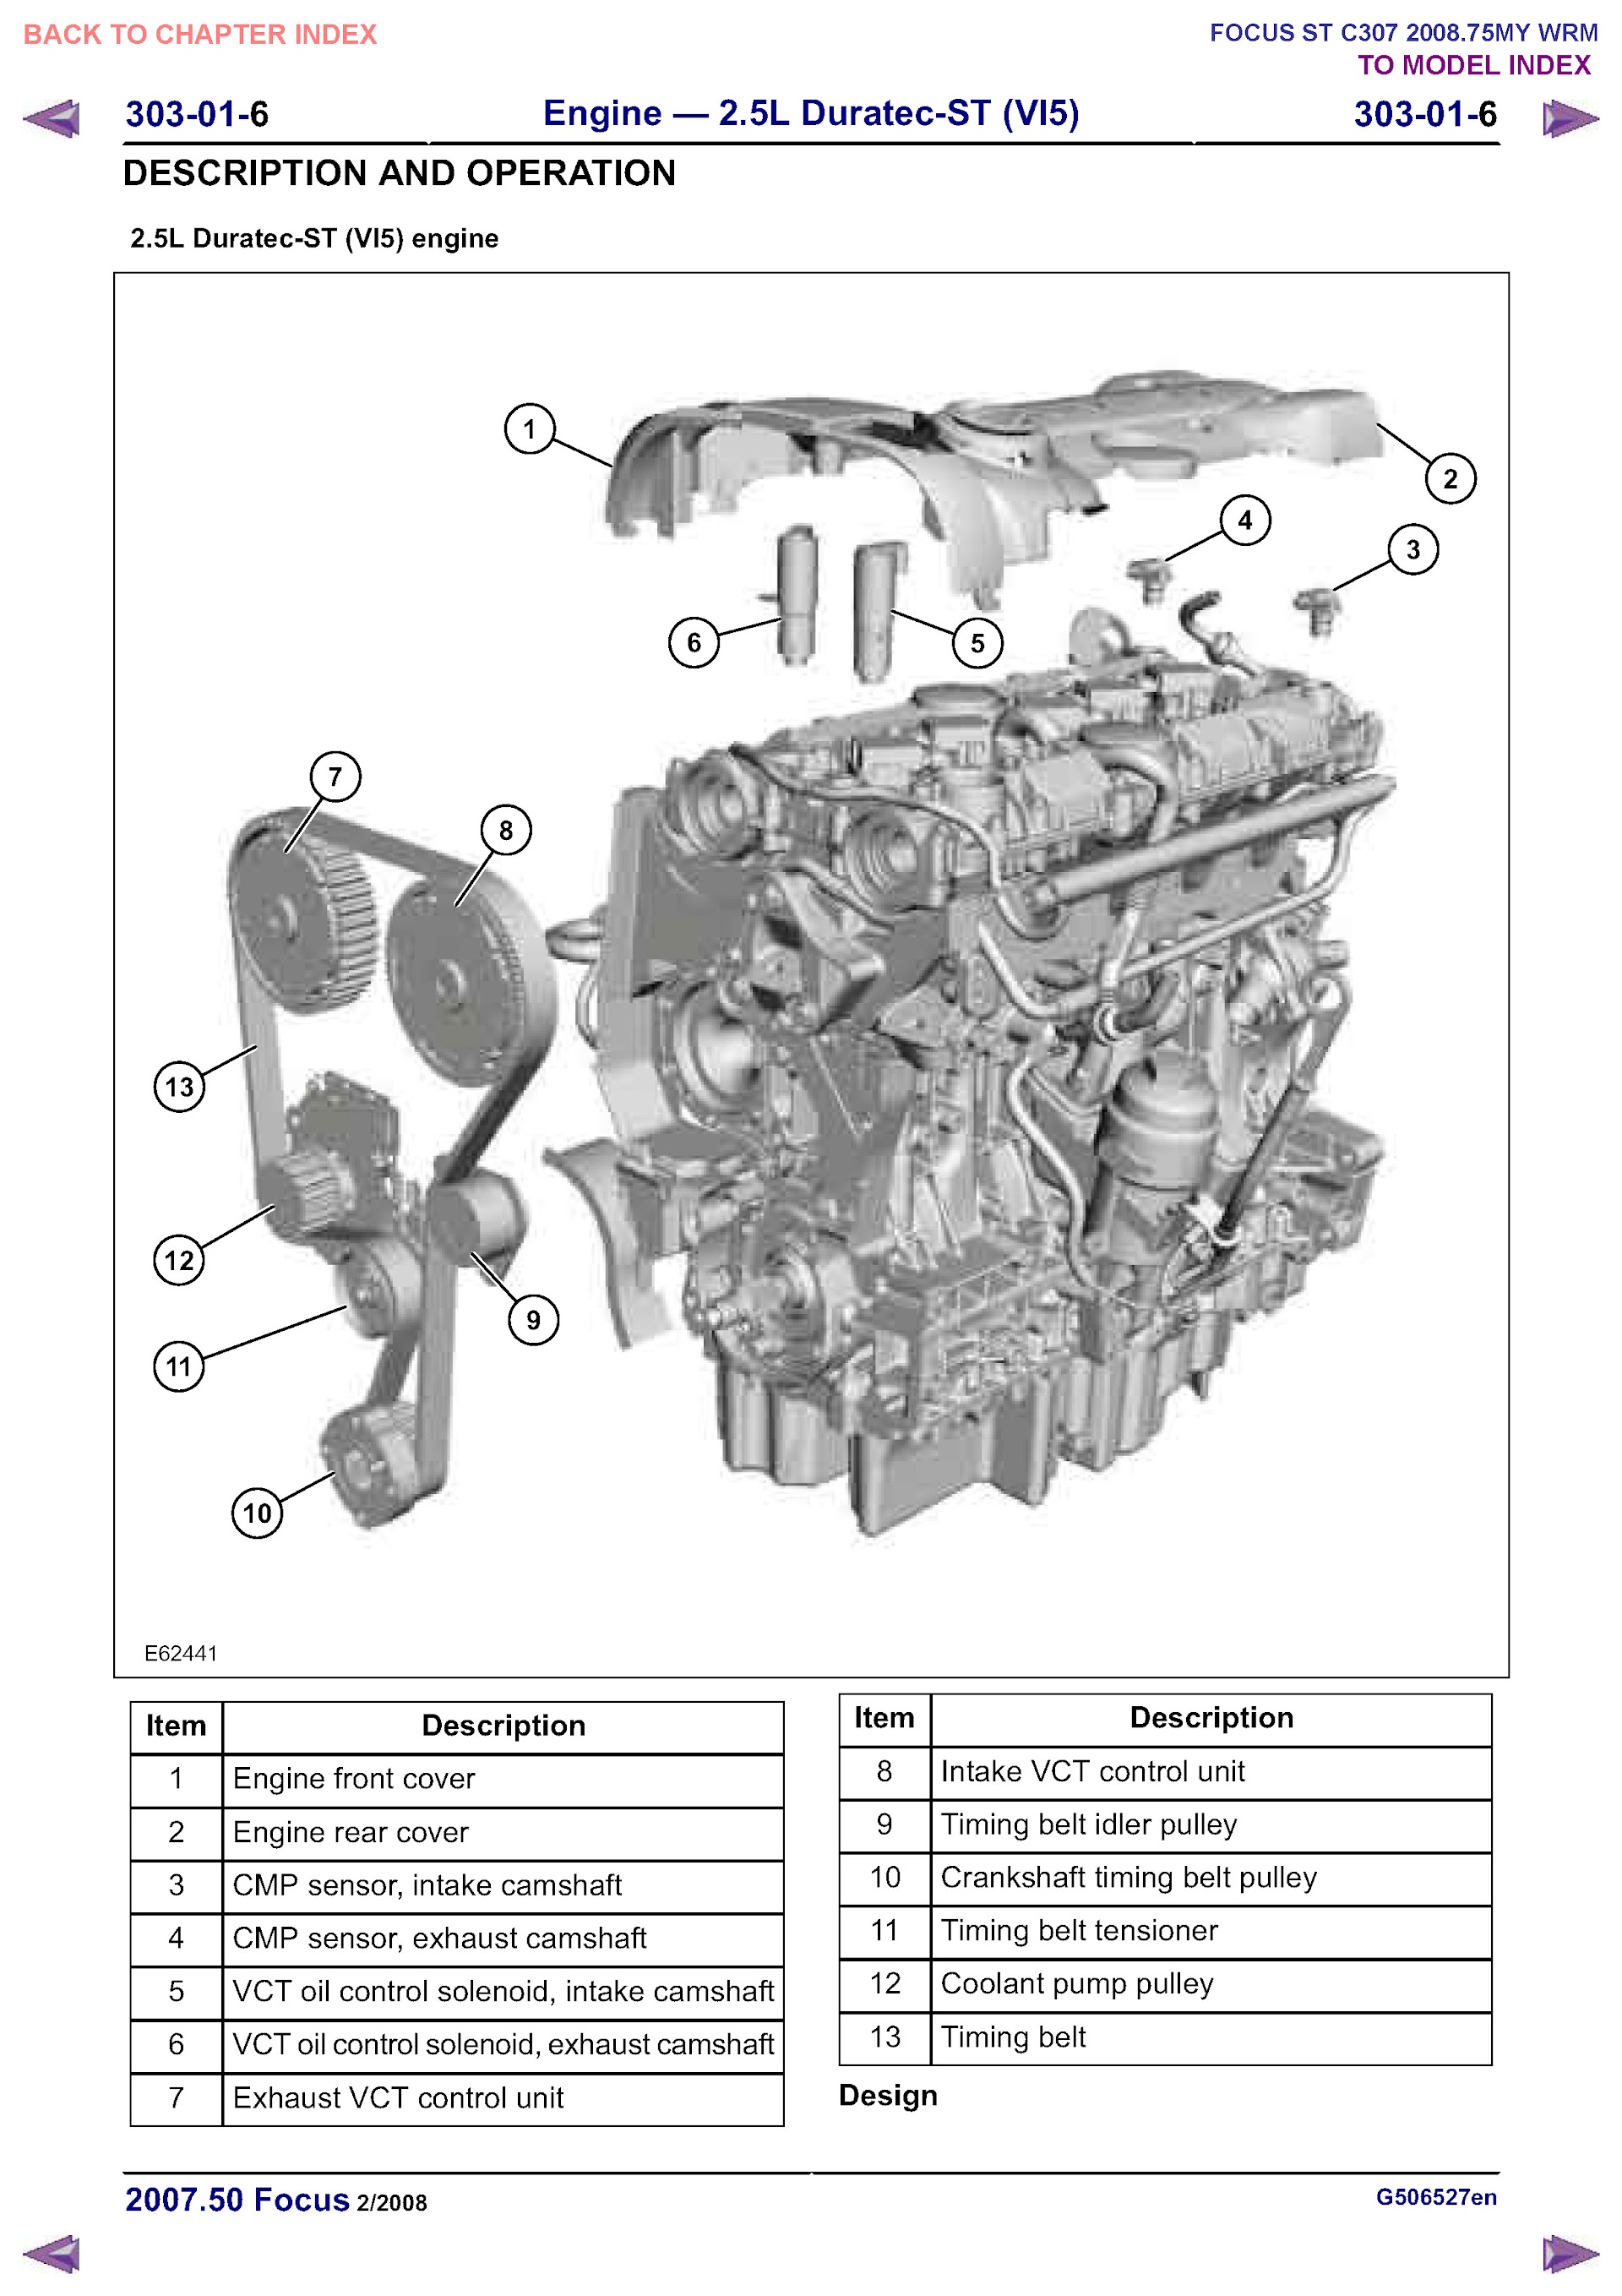 2011 Ford Focus Repair Manual Engine 2.5L Duratex-ST (VI5)